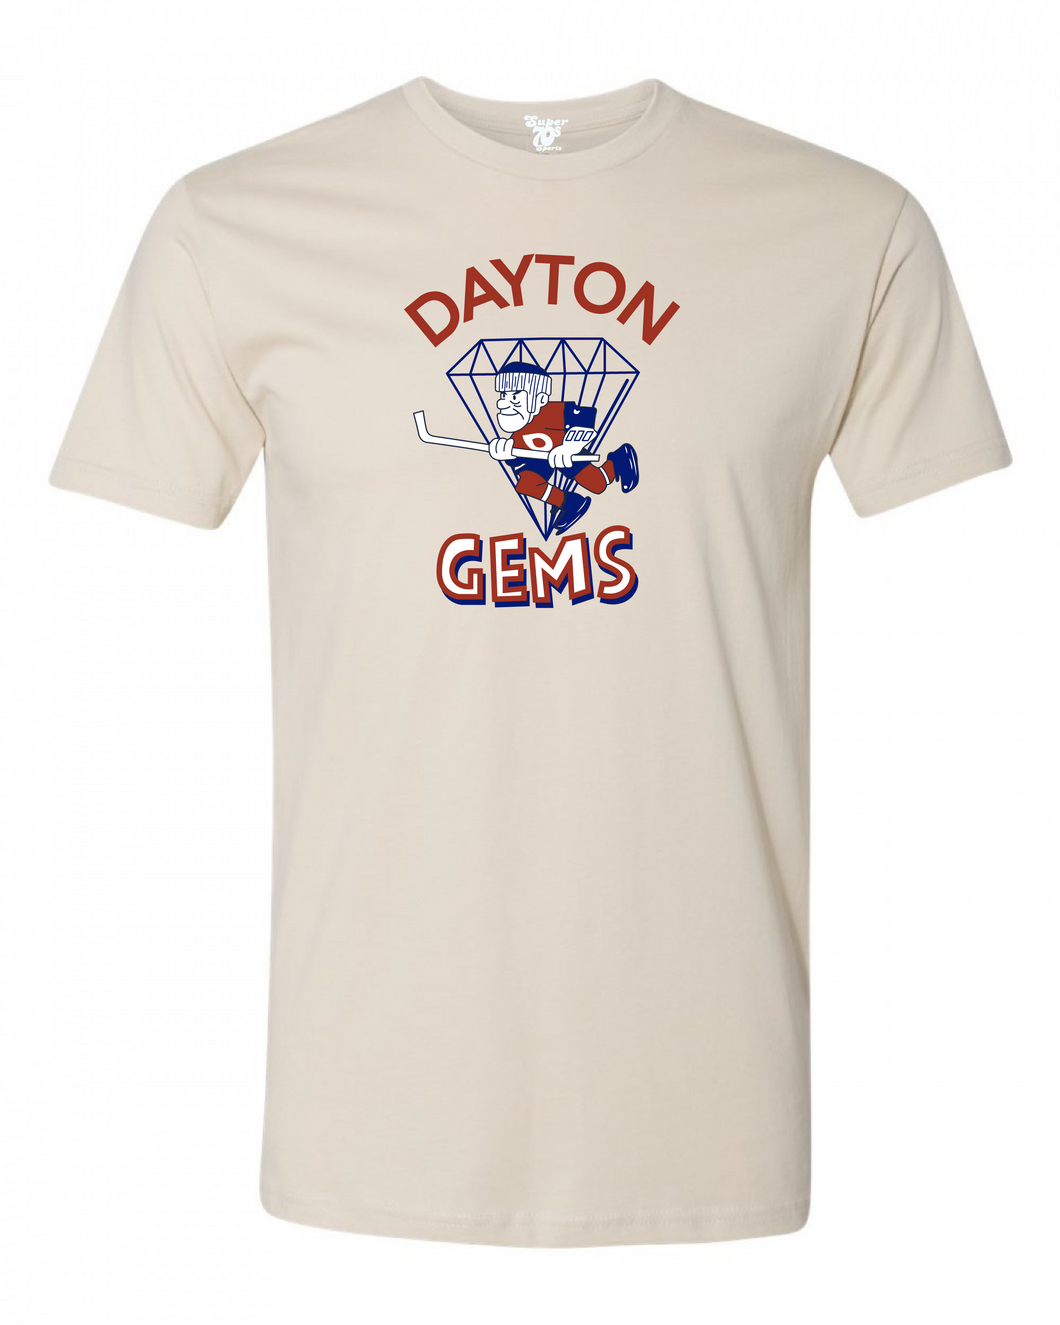 Dayton Gems Tee – Super 70s Sports